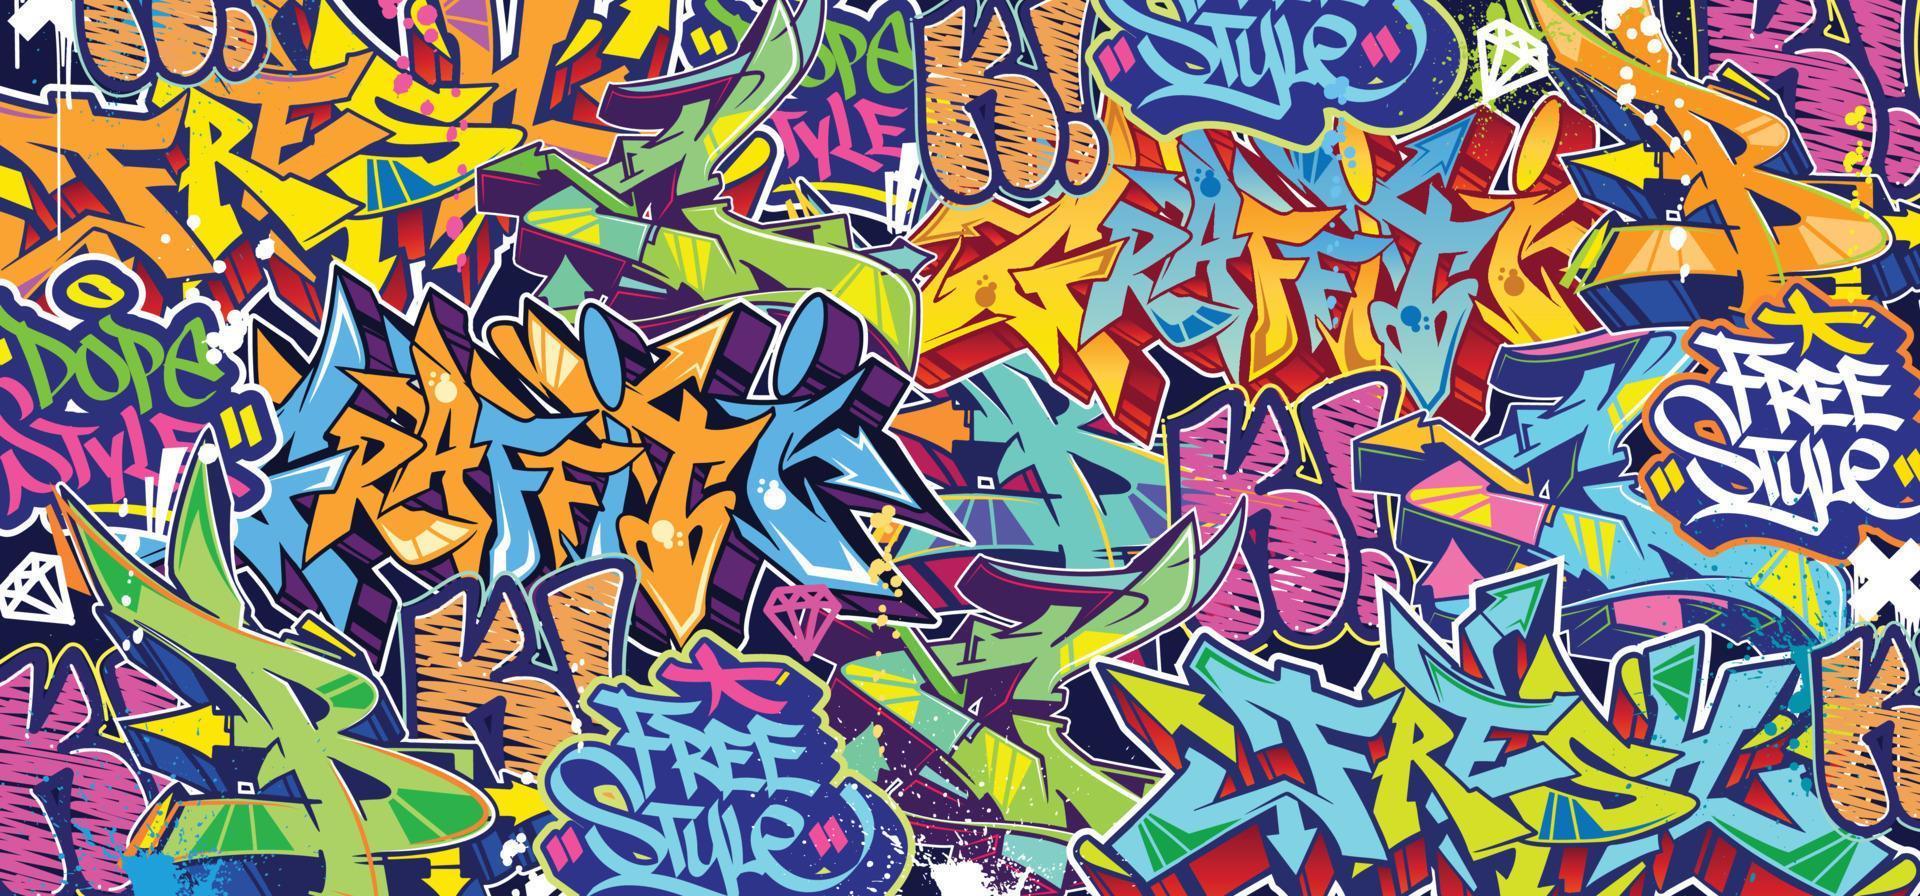 fond d'art mural graffiti coloré street art hip-hop fond d'illustration vectorielle urbaine. fond d'art graffiti incroyable sans soudure vecteur